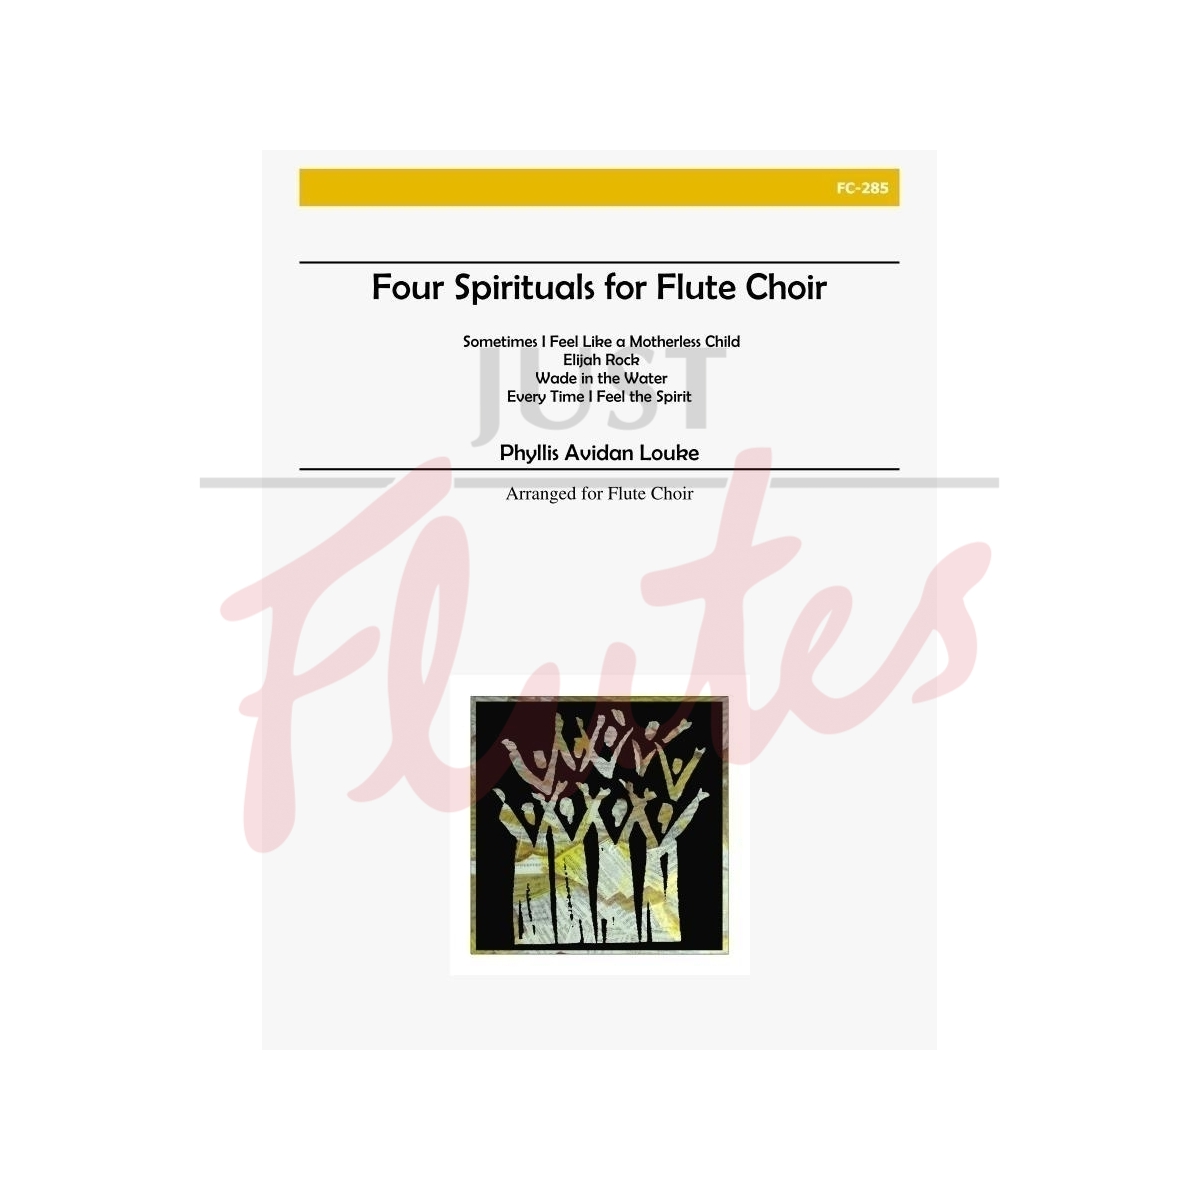 Four Spirituals for Flute Choir